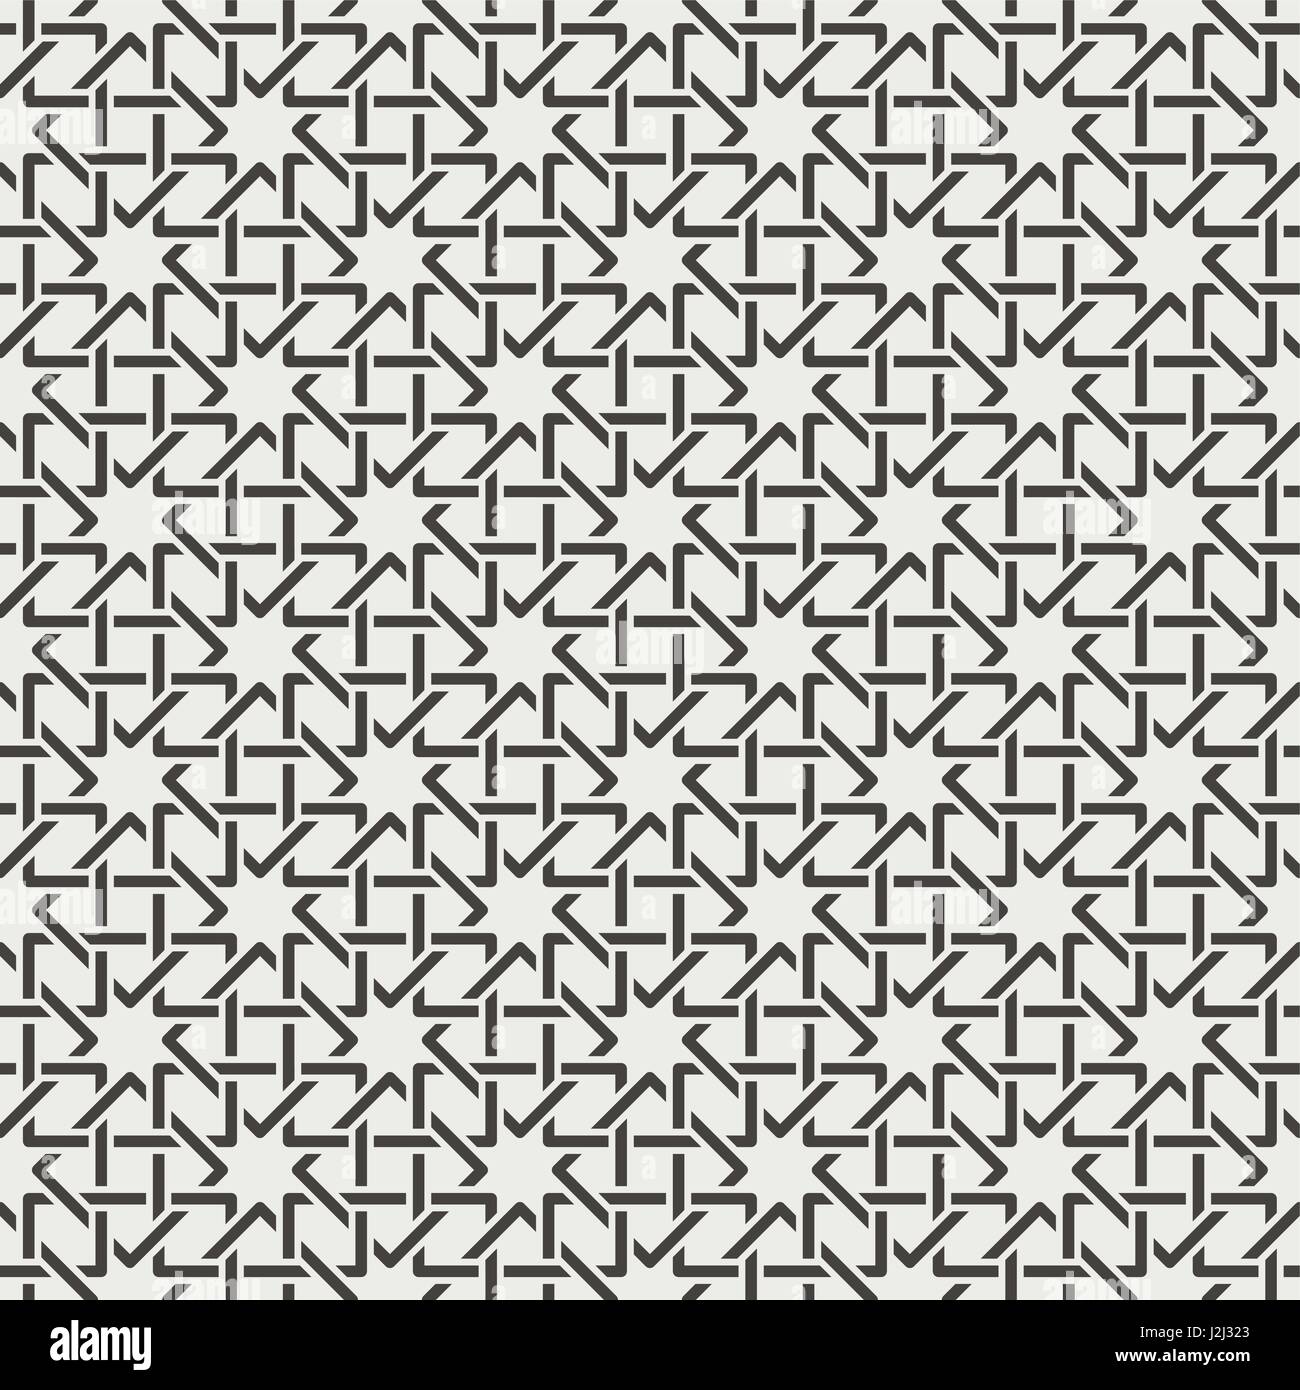 Nahtlose Muster. Moderne stilvolle Textur. Regelmäßig wiederholte geometrische Ornament mit sich überschneidenden Rhomben und Diamanten. Vektorelement der grafischen Stock Vektor